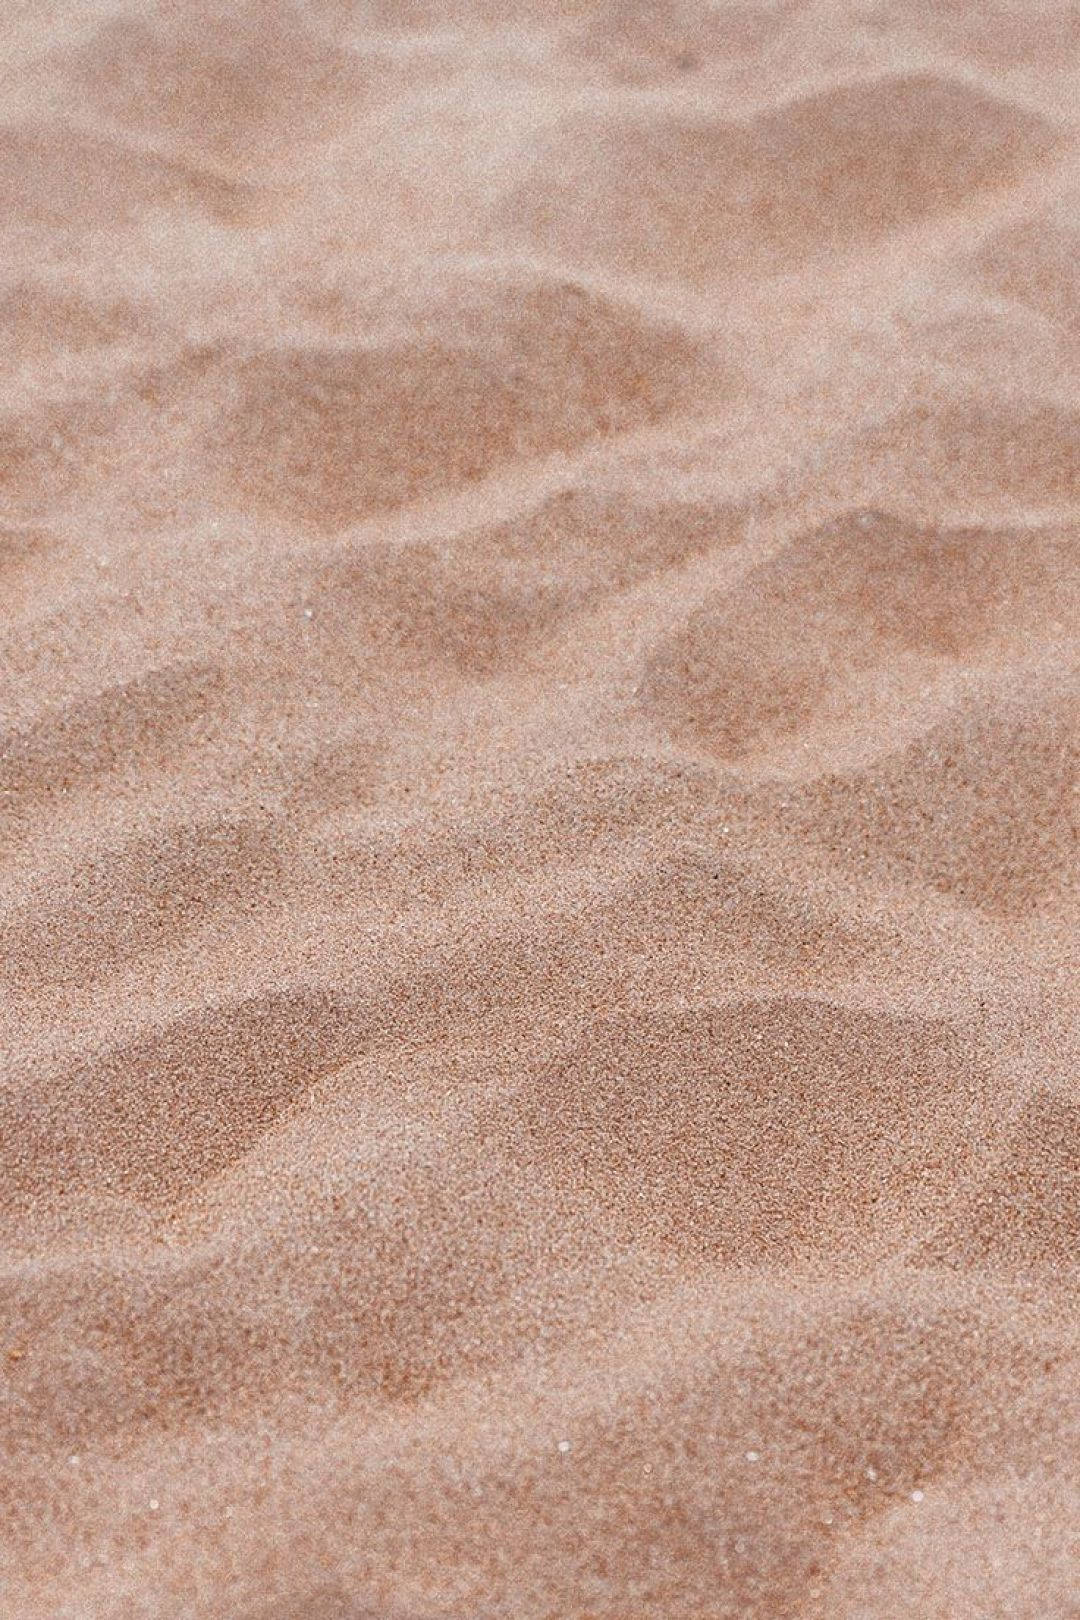 Download Aesthetic Beige Sand Wallpaper